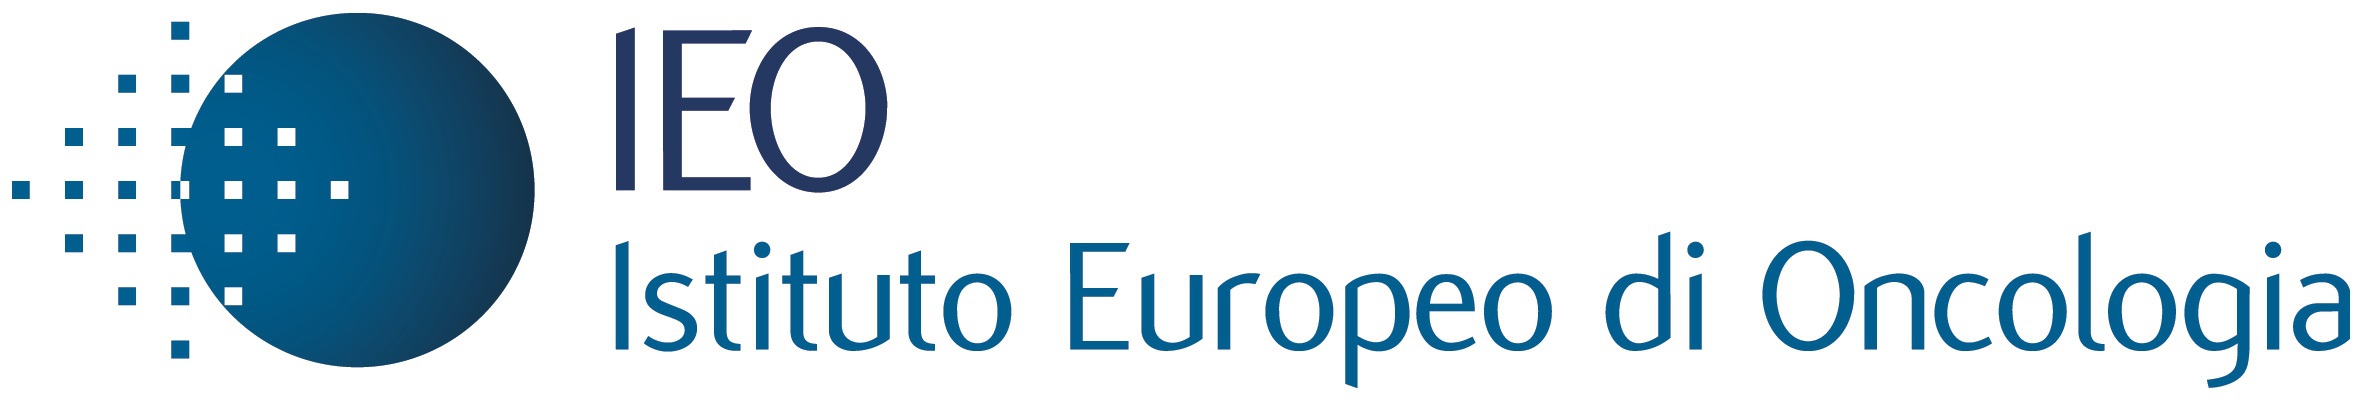 Istituto Europeo di Oncologia